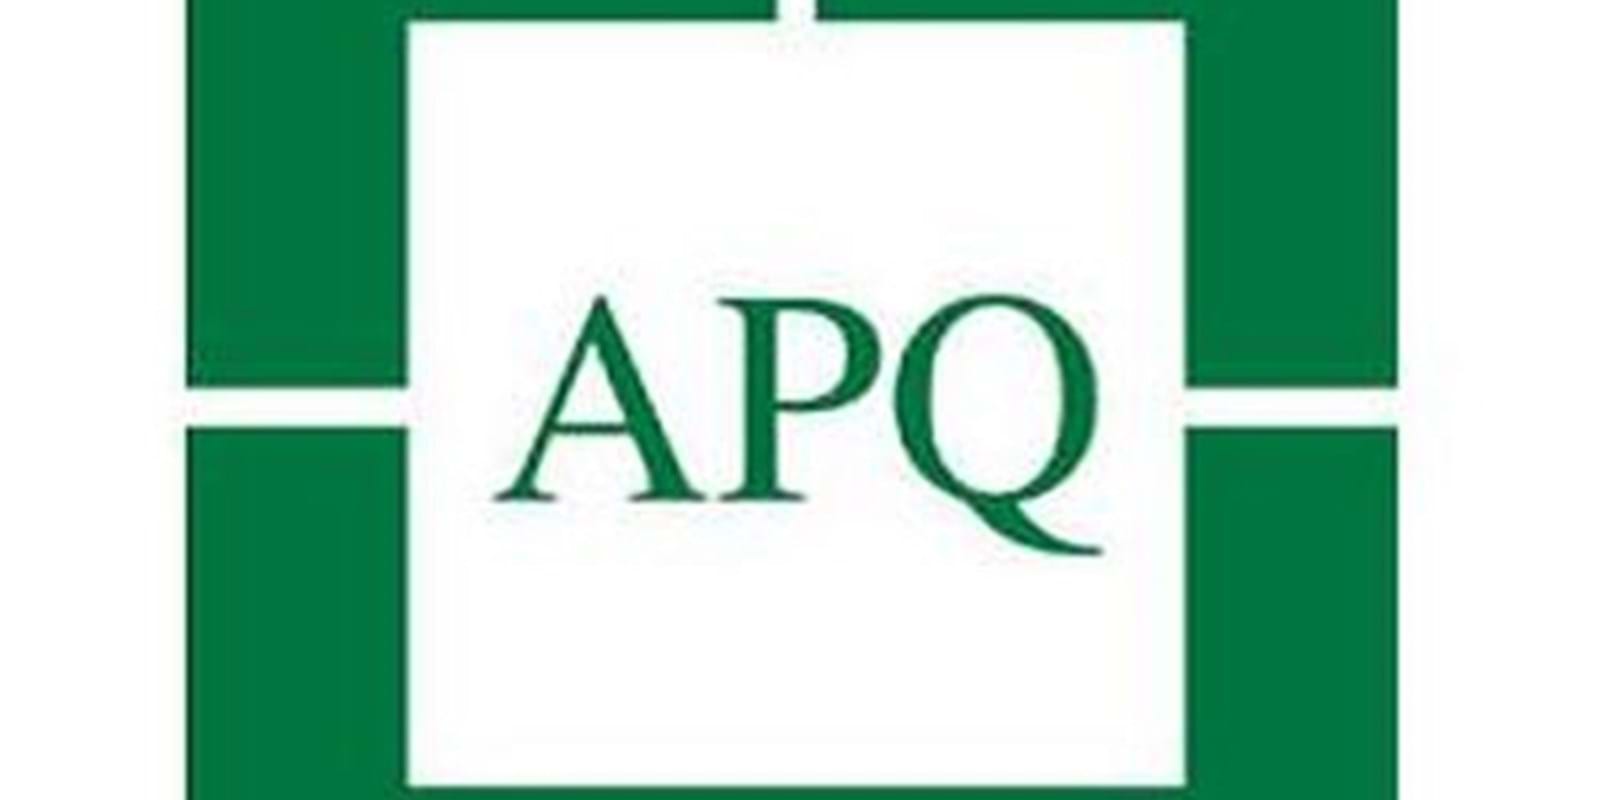 Rappel : Poursuite contre un propriétaire pour une enquête de crédit non signée évitée grâce à L'APQ